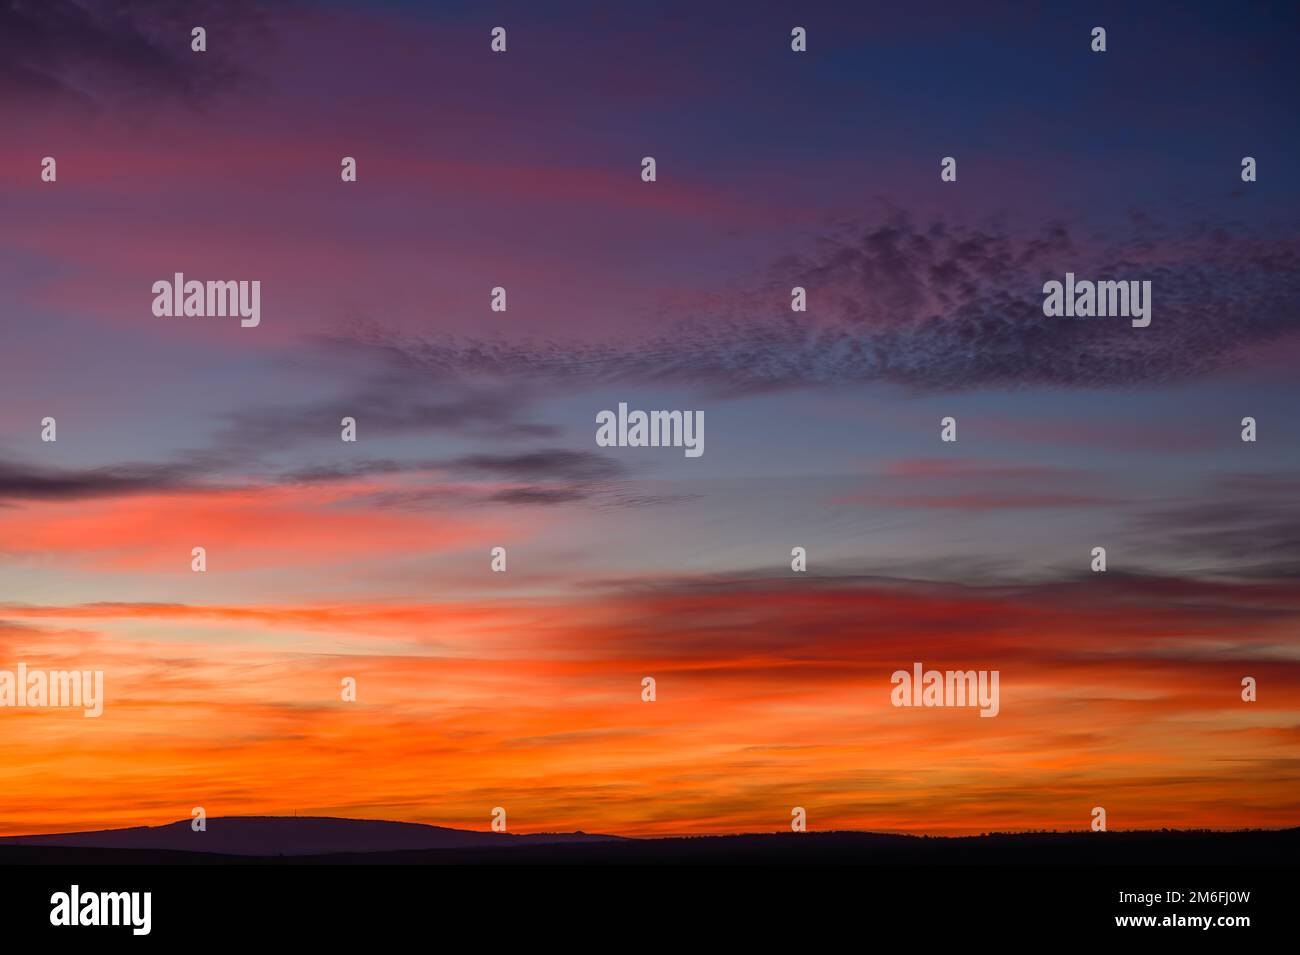 Sehr farbenfrohes Rot, Blau, Orange und Violett am späten Sonnenuntergang Stockfoto